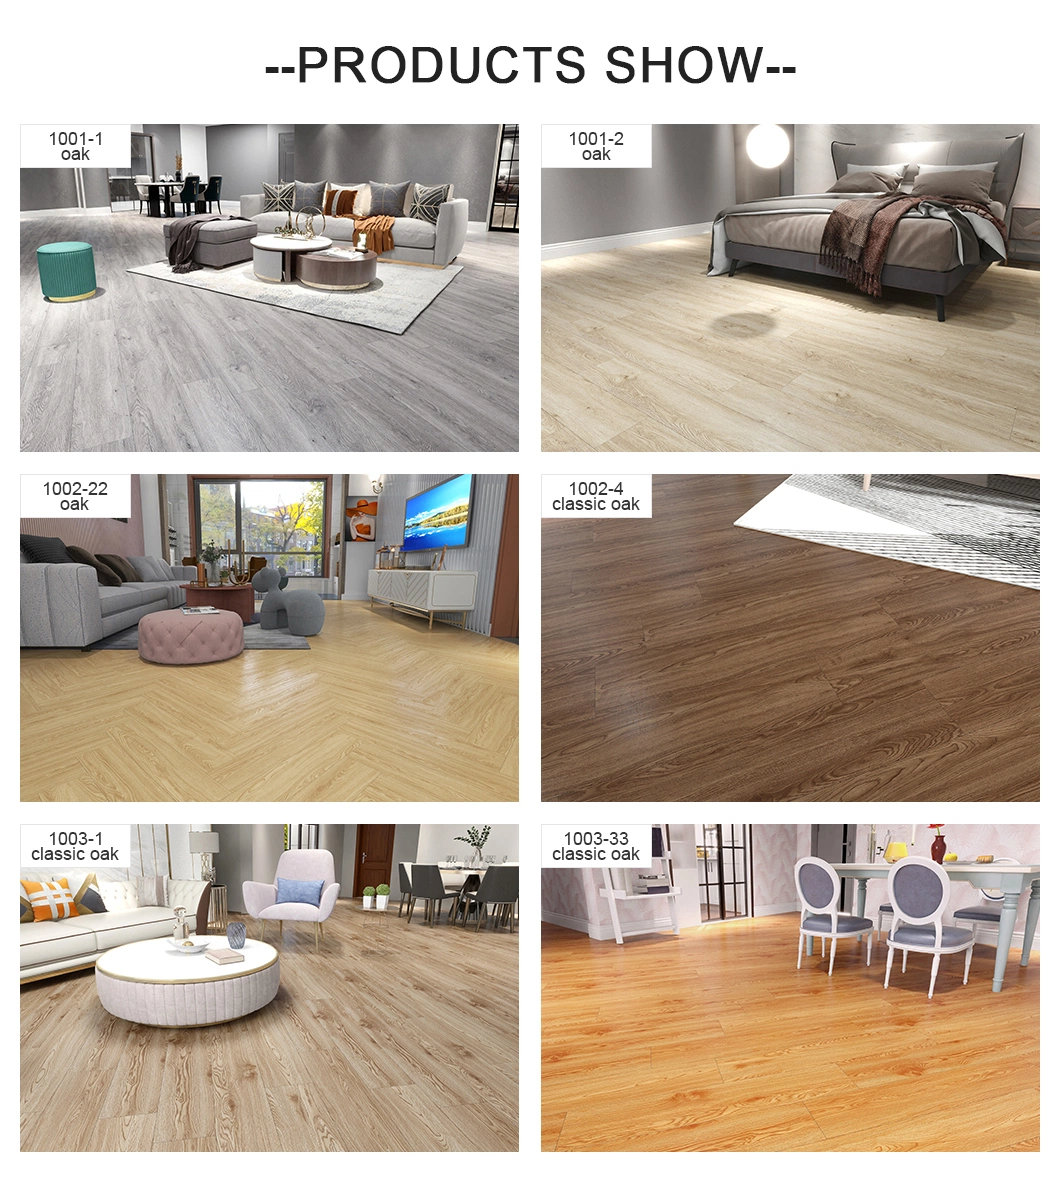 Dark Brown HDF 880kg/M3 Solid Wood Composite Flooring